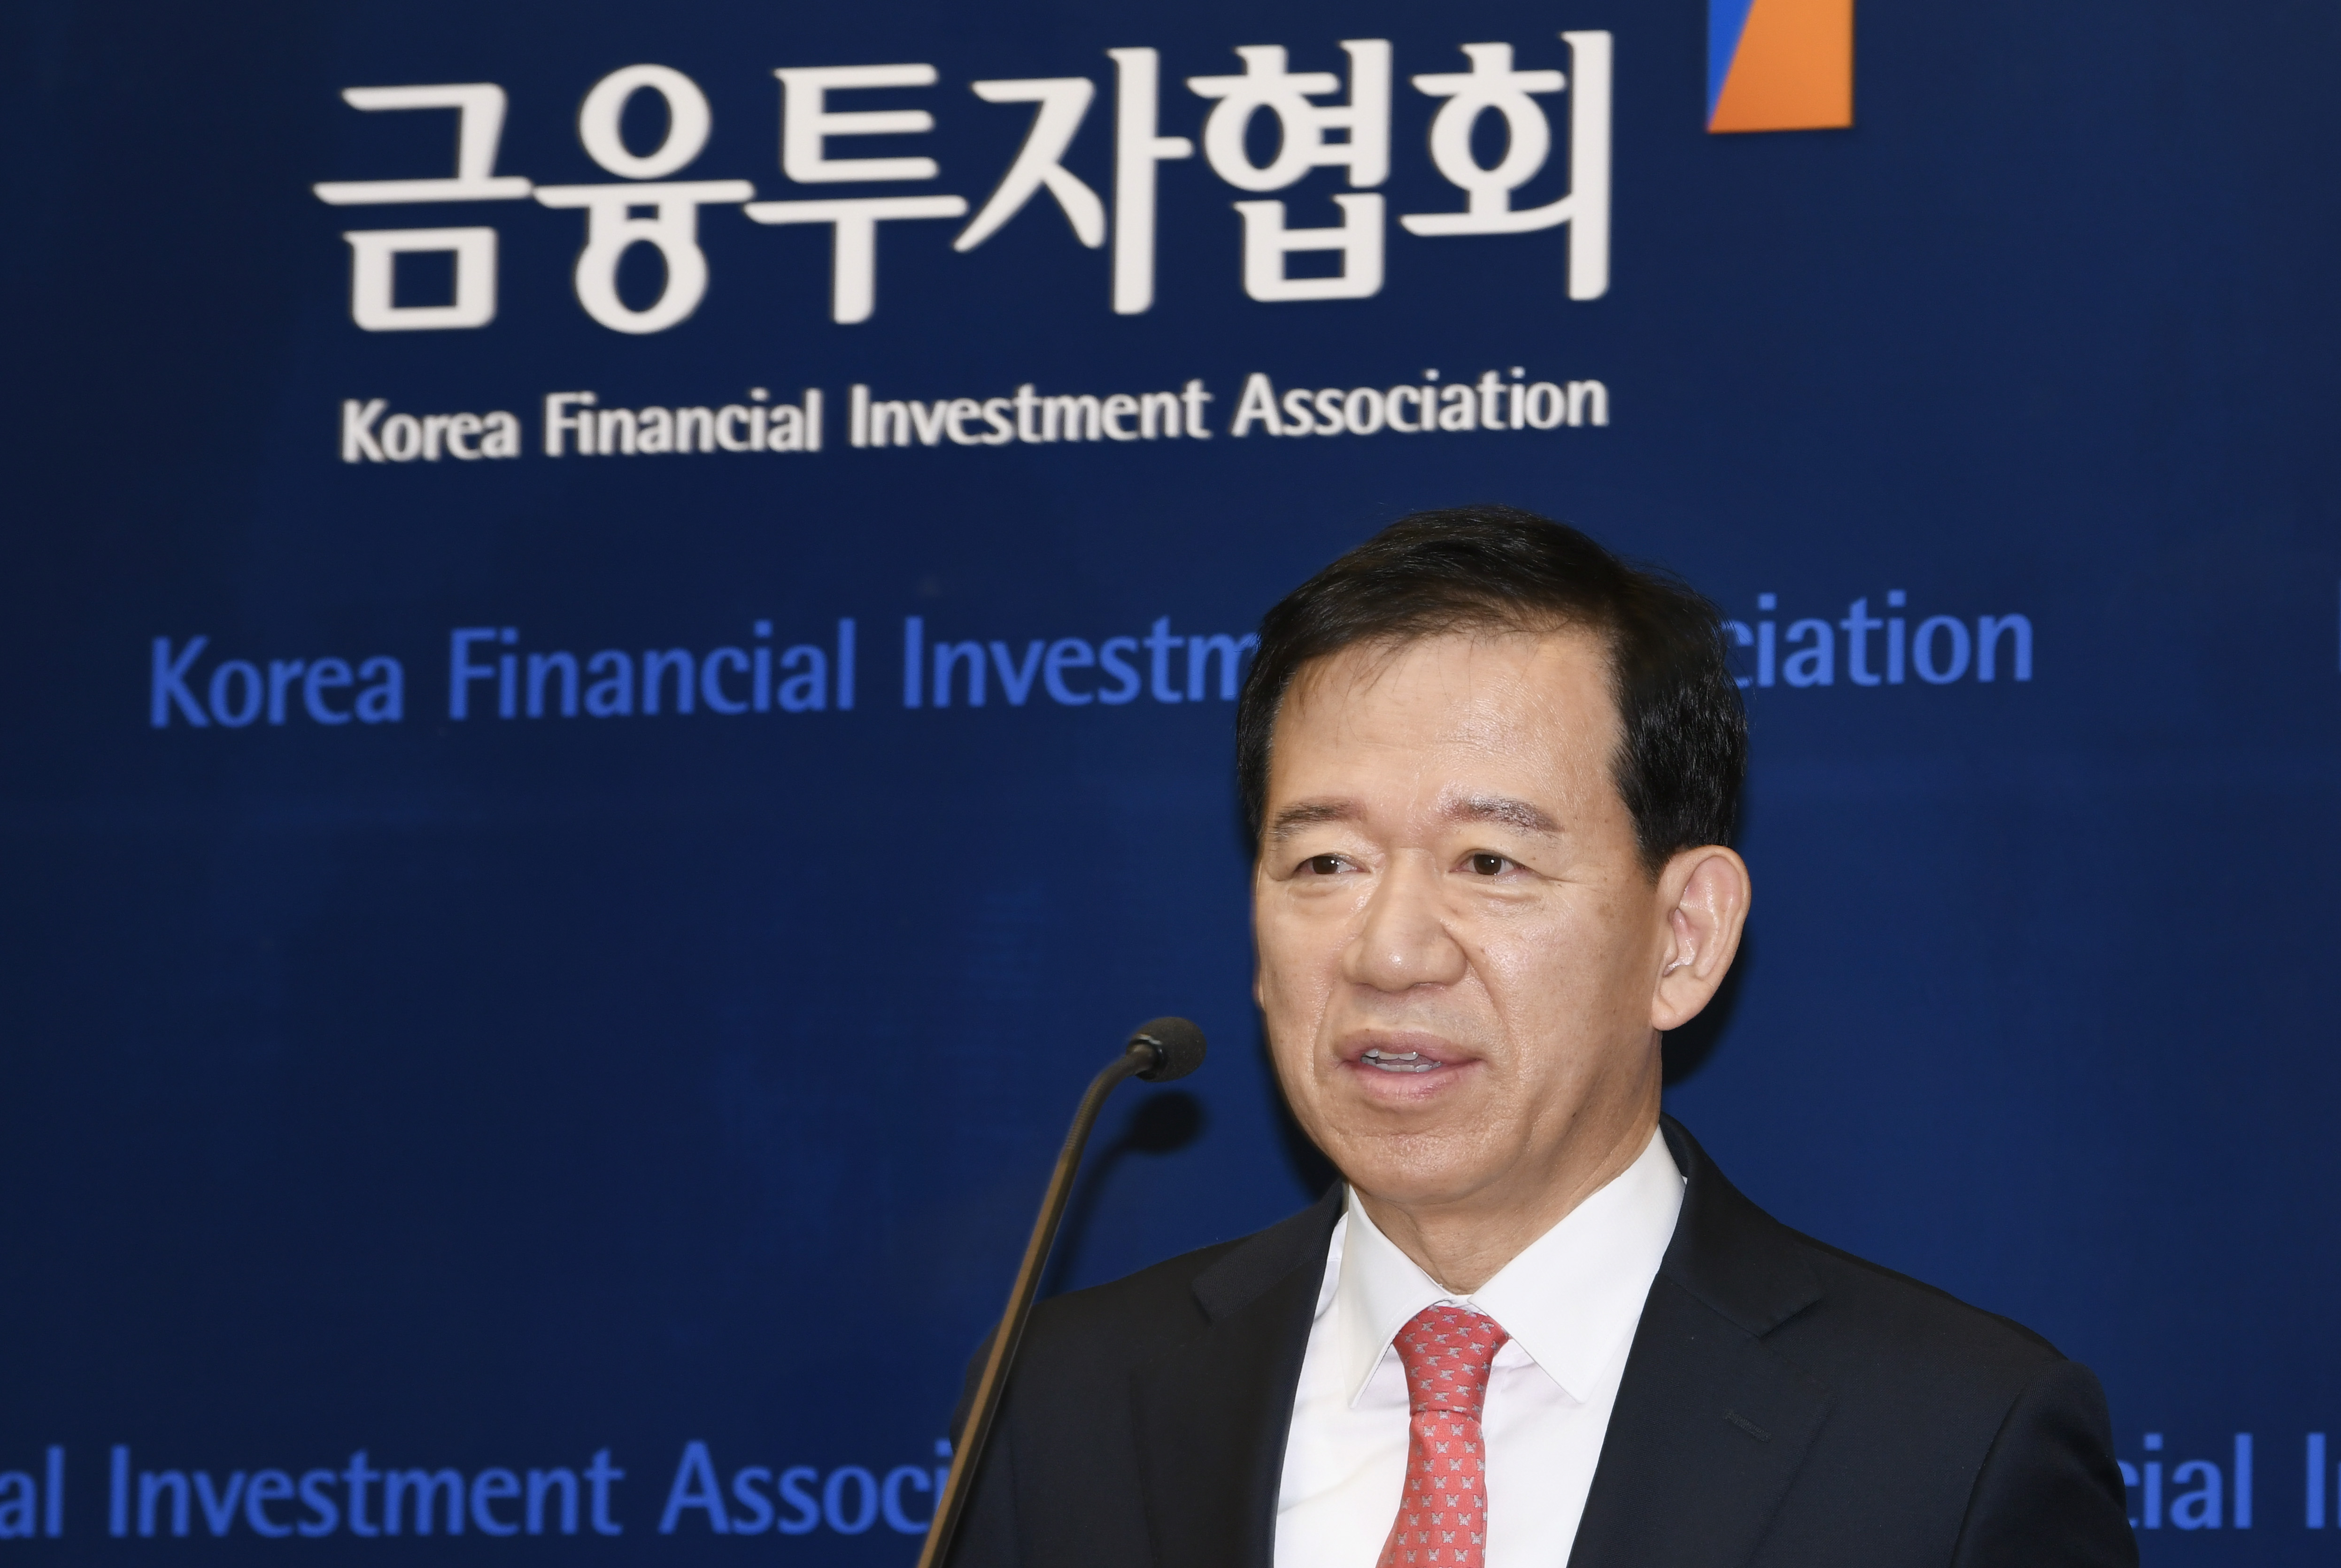 한국금융투자협회 제6대 서유석 회장 취임(23.1.1) 장면